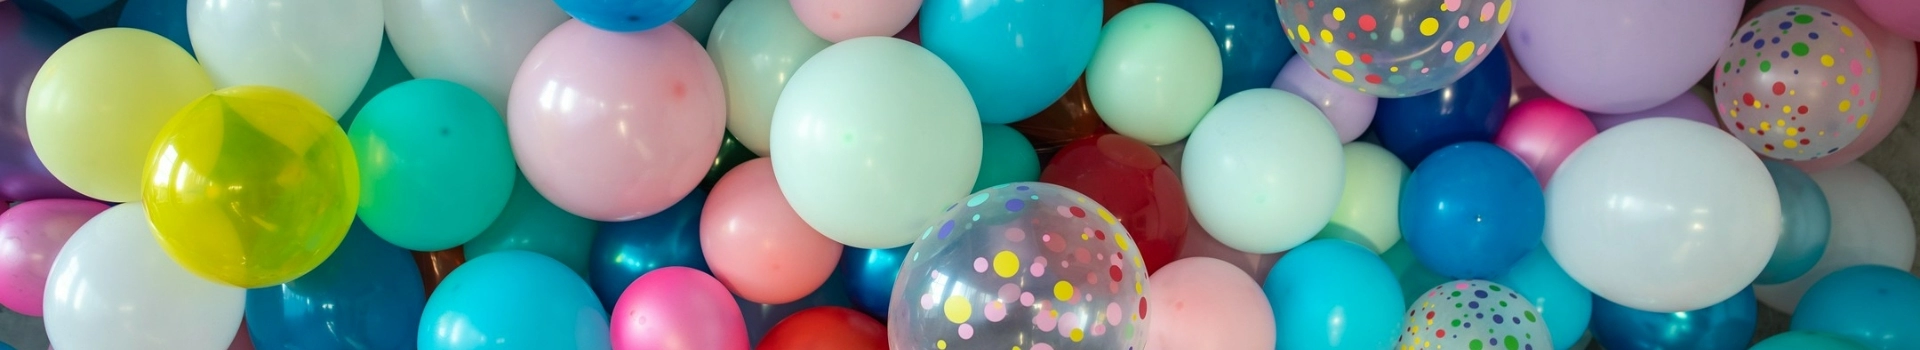 balony i kolorowe kulki